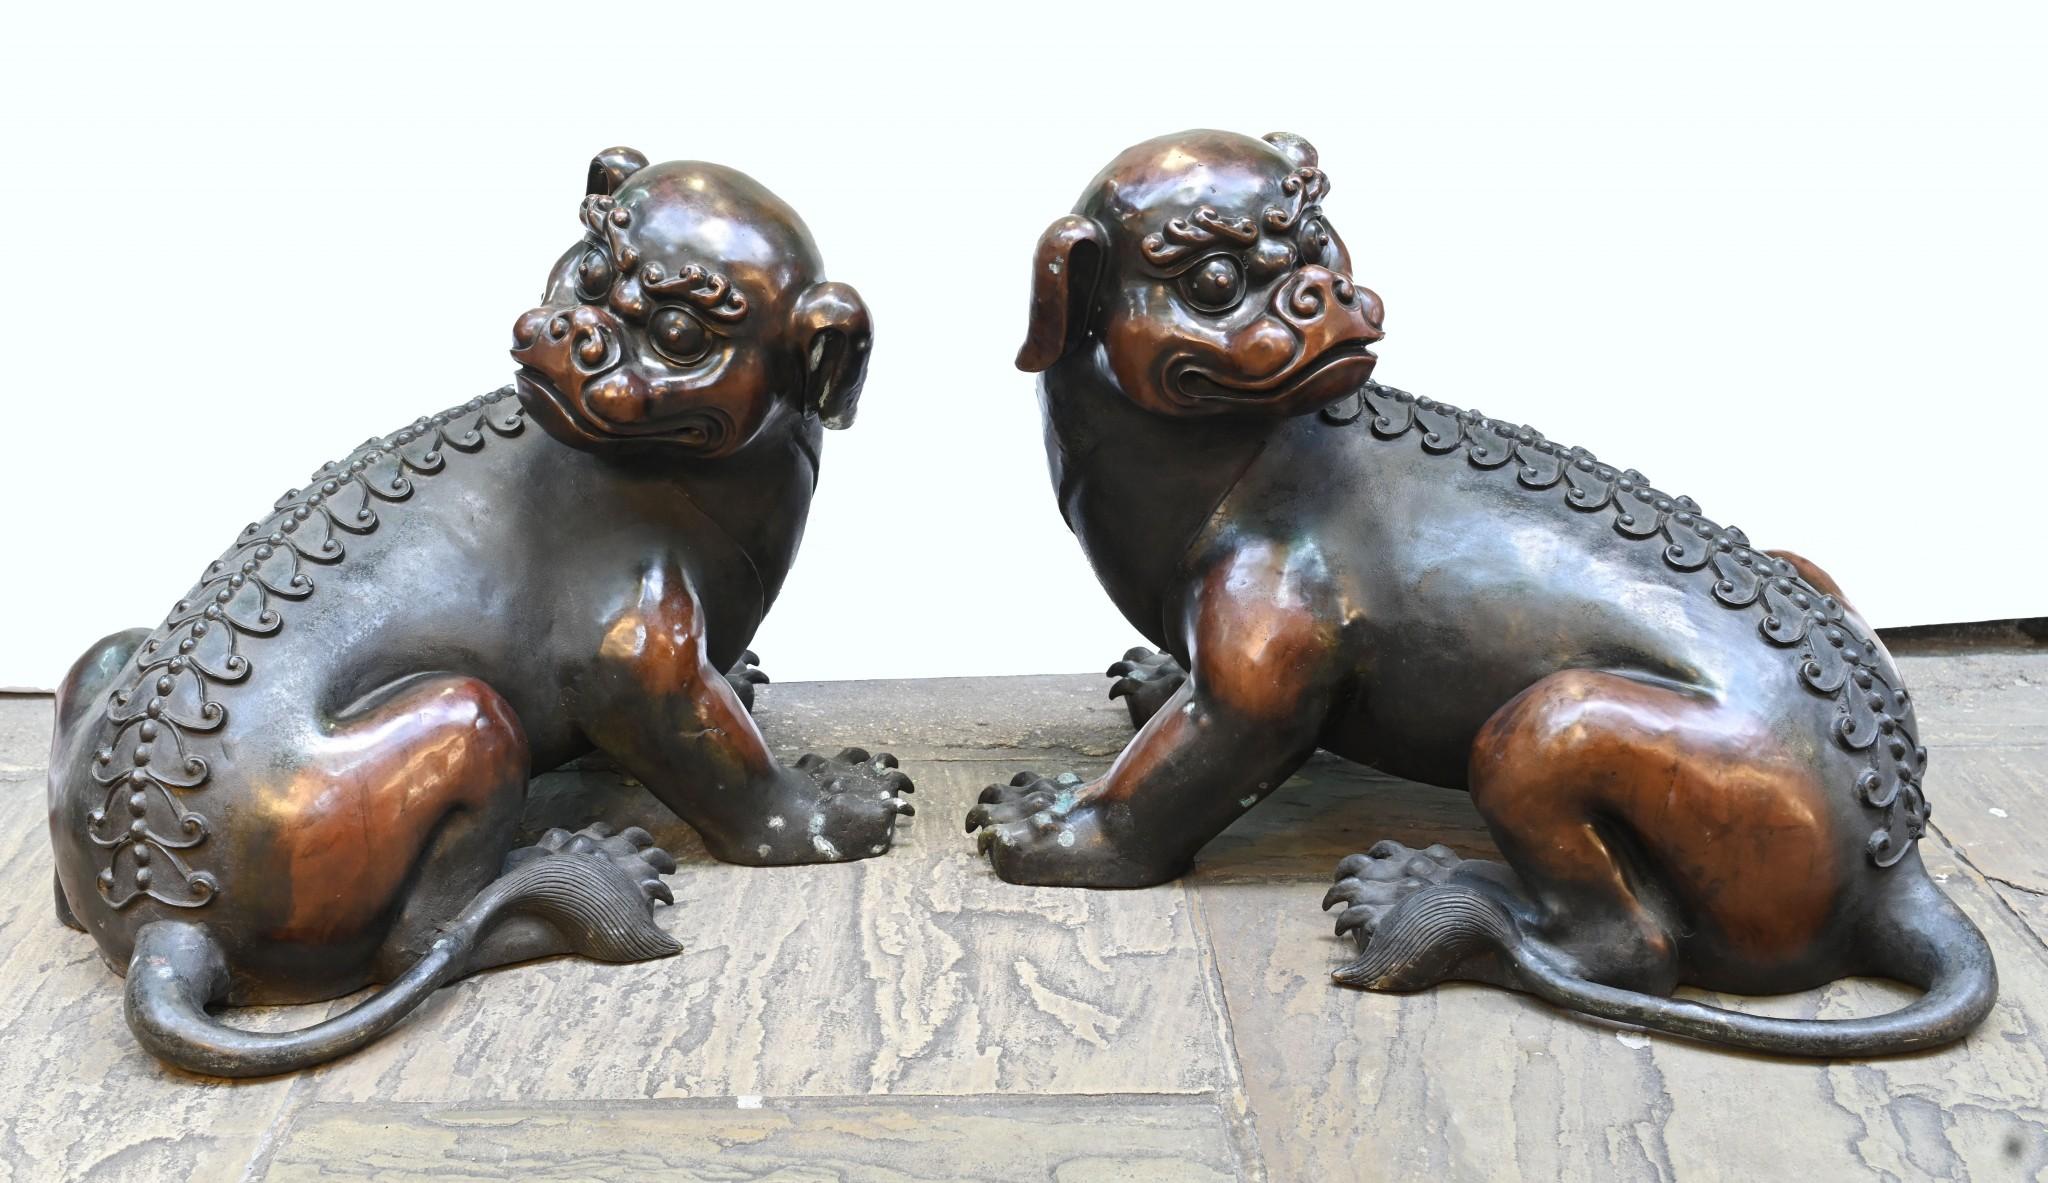 Wunderschönes Paar chinesischer Foo Dogs aus Bronze
Großartiges Aussehen dieses Paares, das links und rechts perfekt zusammenpasst.
CIRCA 1920 mit einer großen Patina auf der Bronze
Da sie aus Bronze sind, können sie natürlich auch draußen leben,